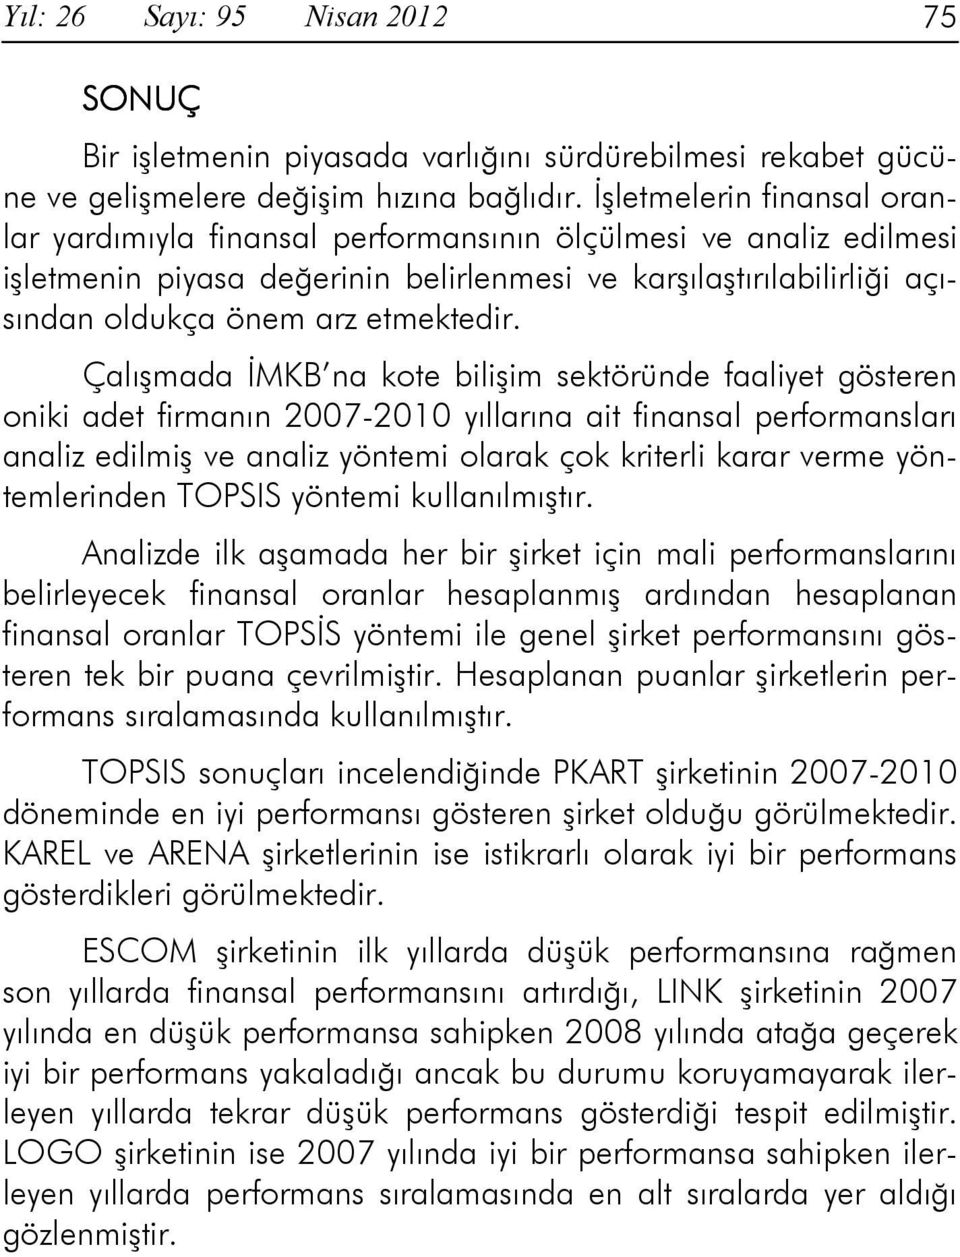 Çalışmada ĐMKB na kote bilişim sektöründe faaliyet gösteren oniki adet firmanın 2007-2010 yıllarına ait finansal performansları analiz edilmiş ve analiz yöntemi olarak çok kriterli karar verme